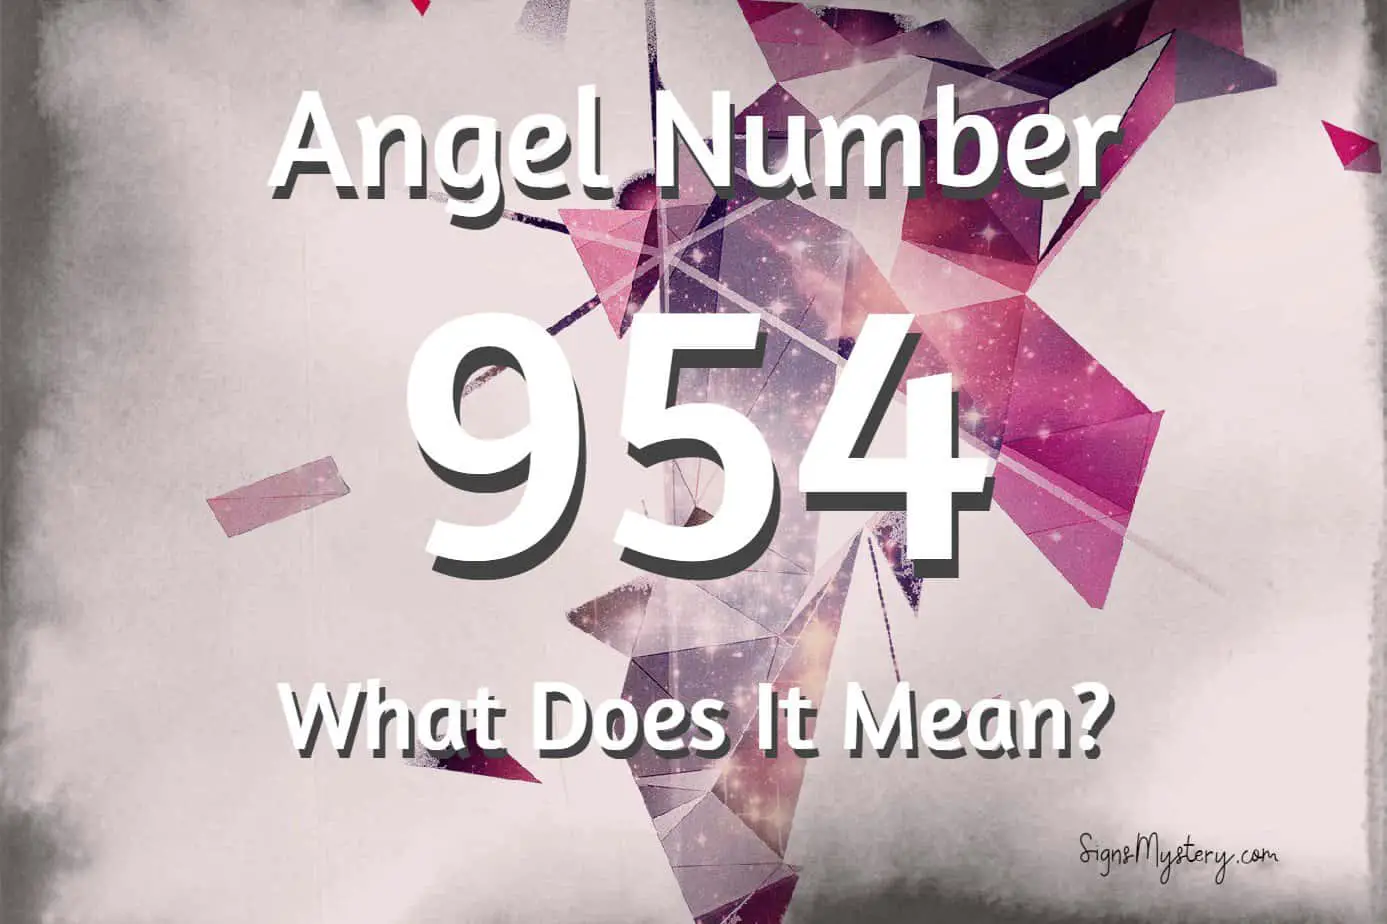 954 angel number